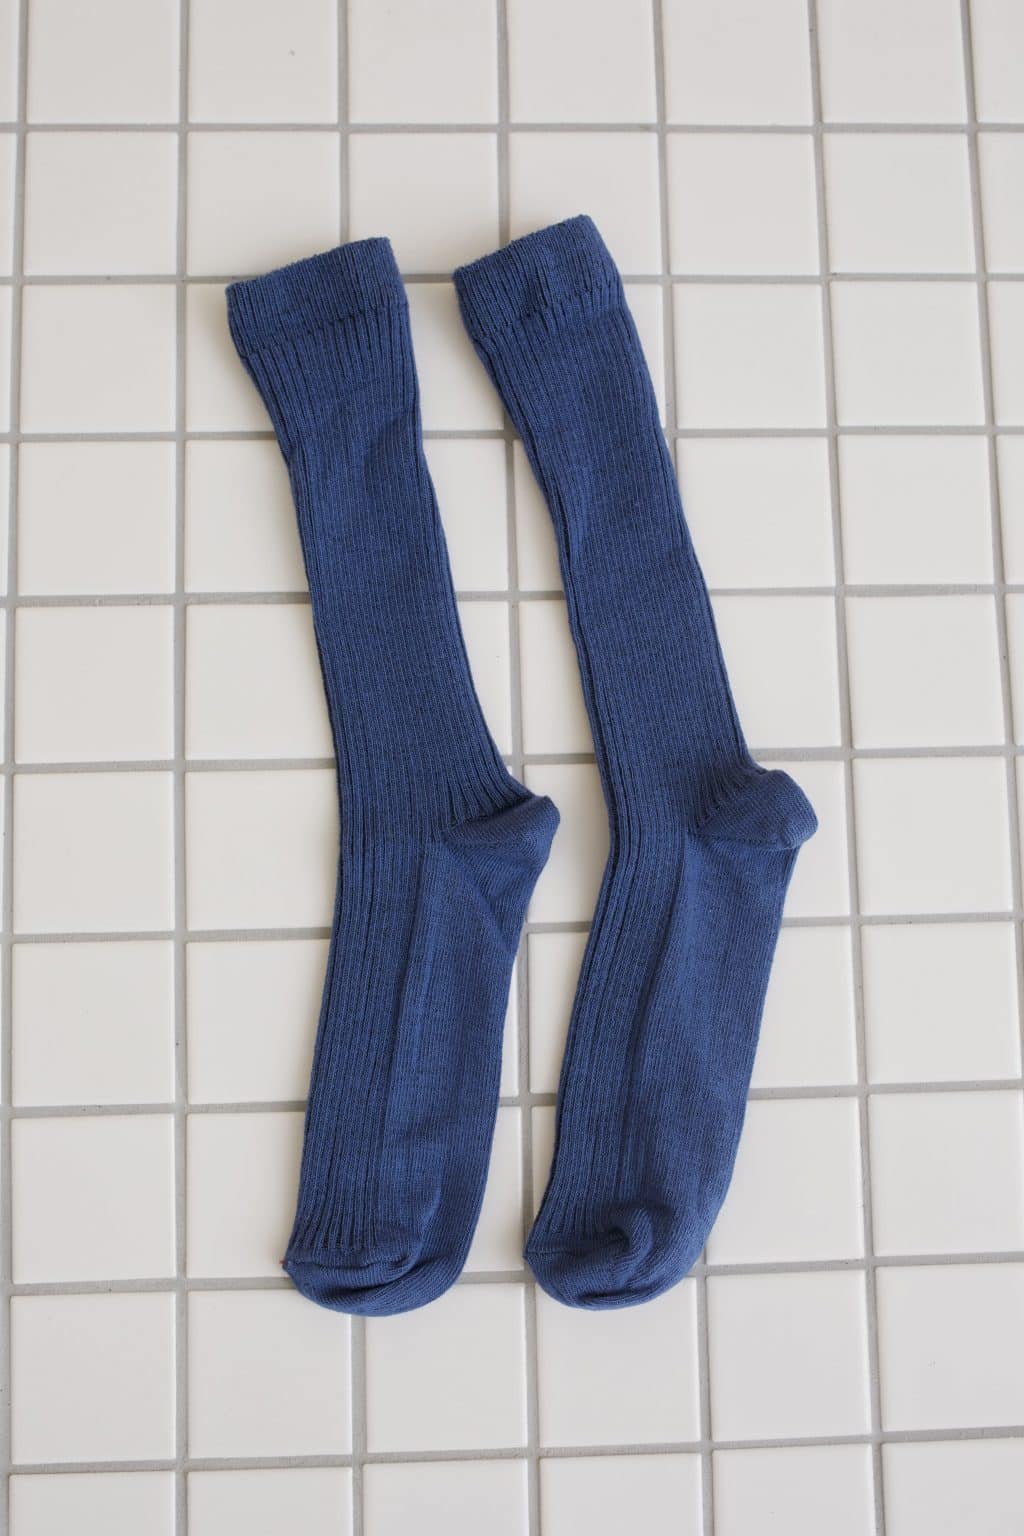 Navy blue socks